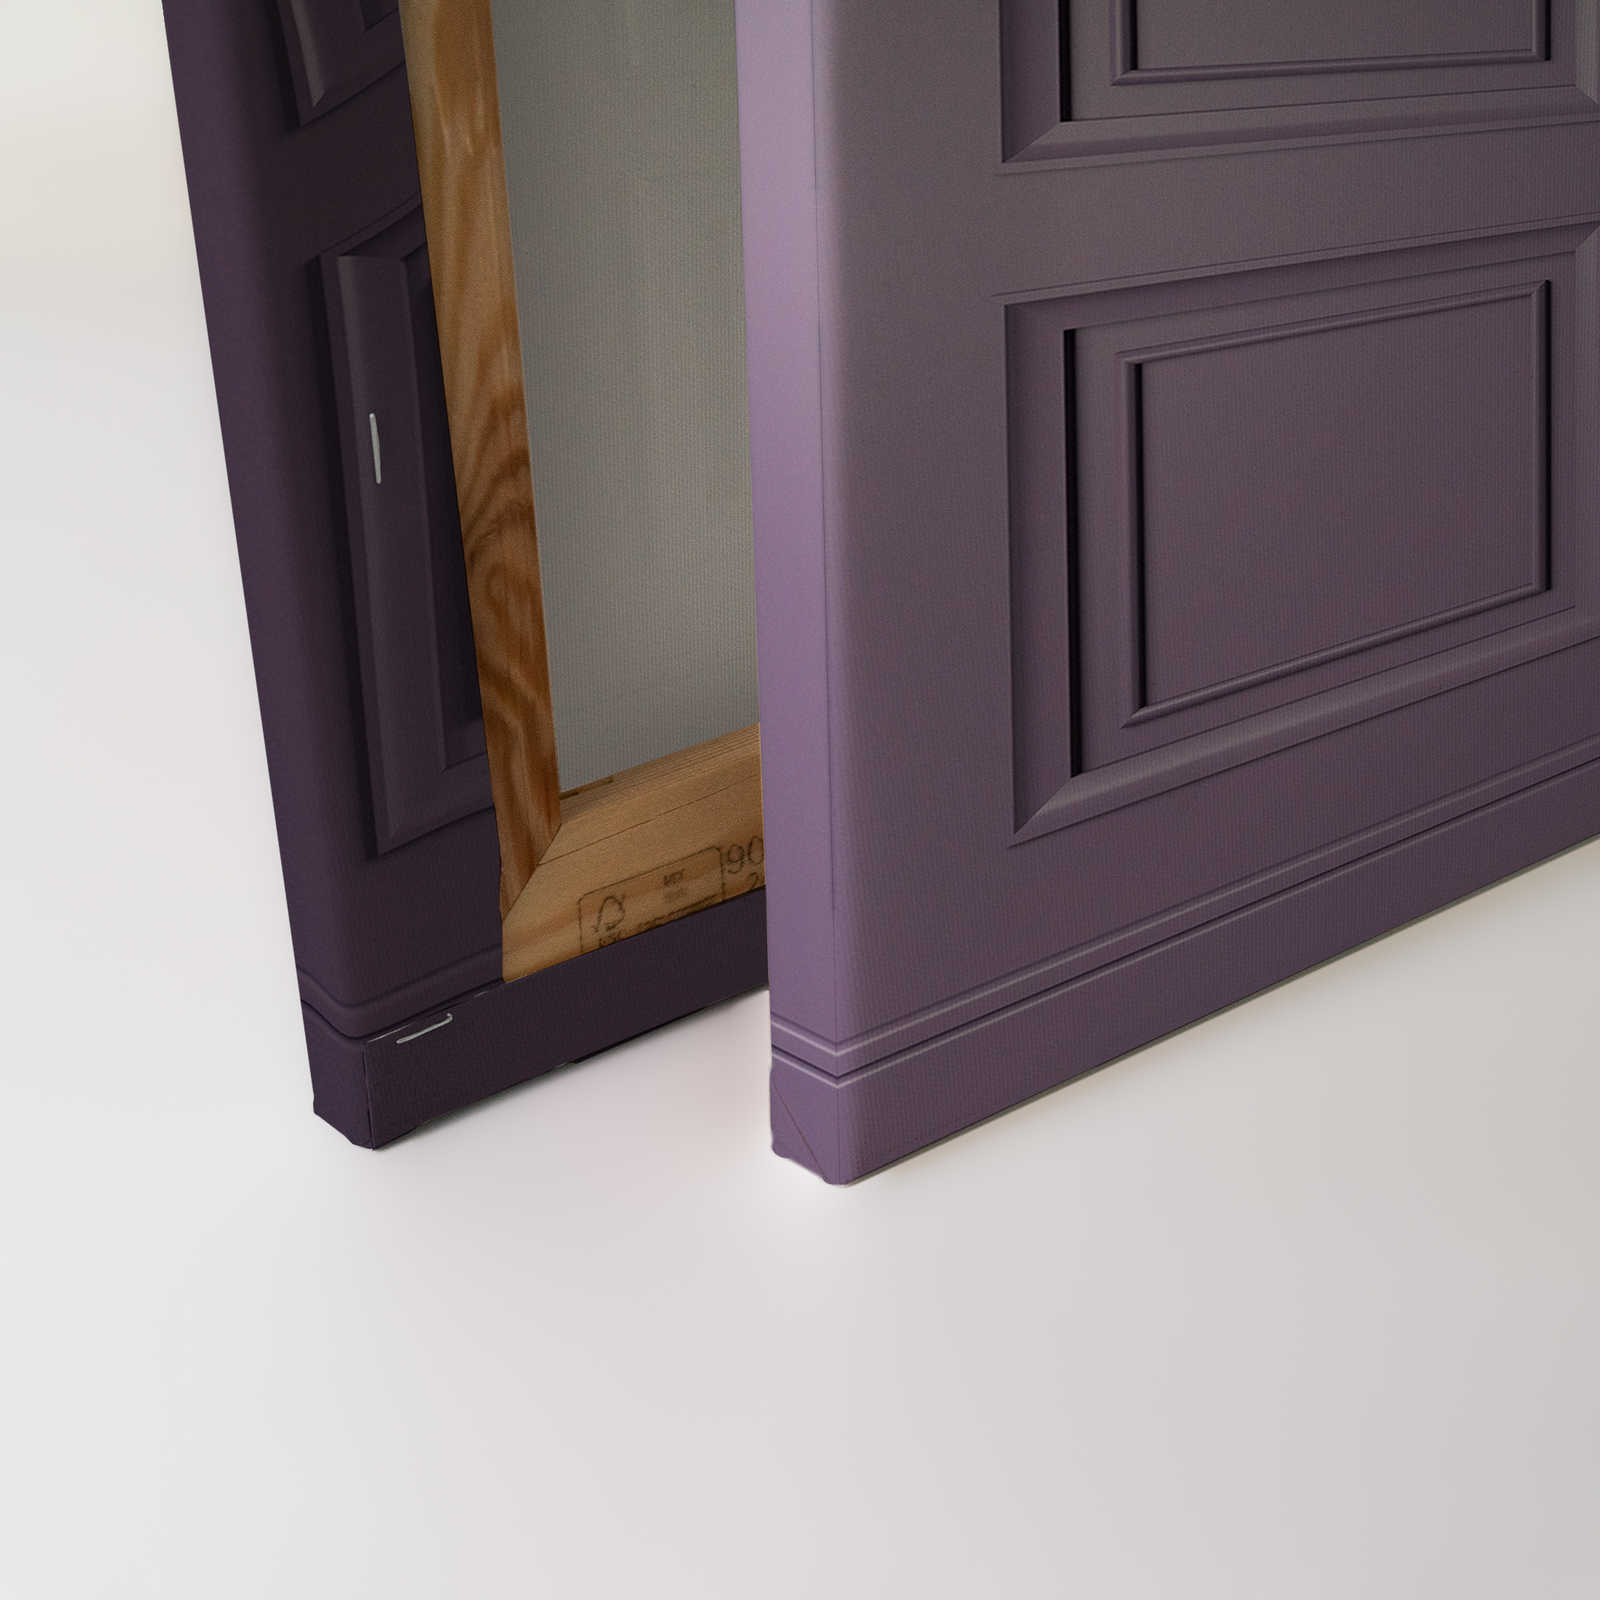             Kensington 3 - Quadro 3D in legno viola scuro, viola - 1,20 m x 0,80 m
        